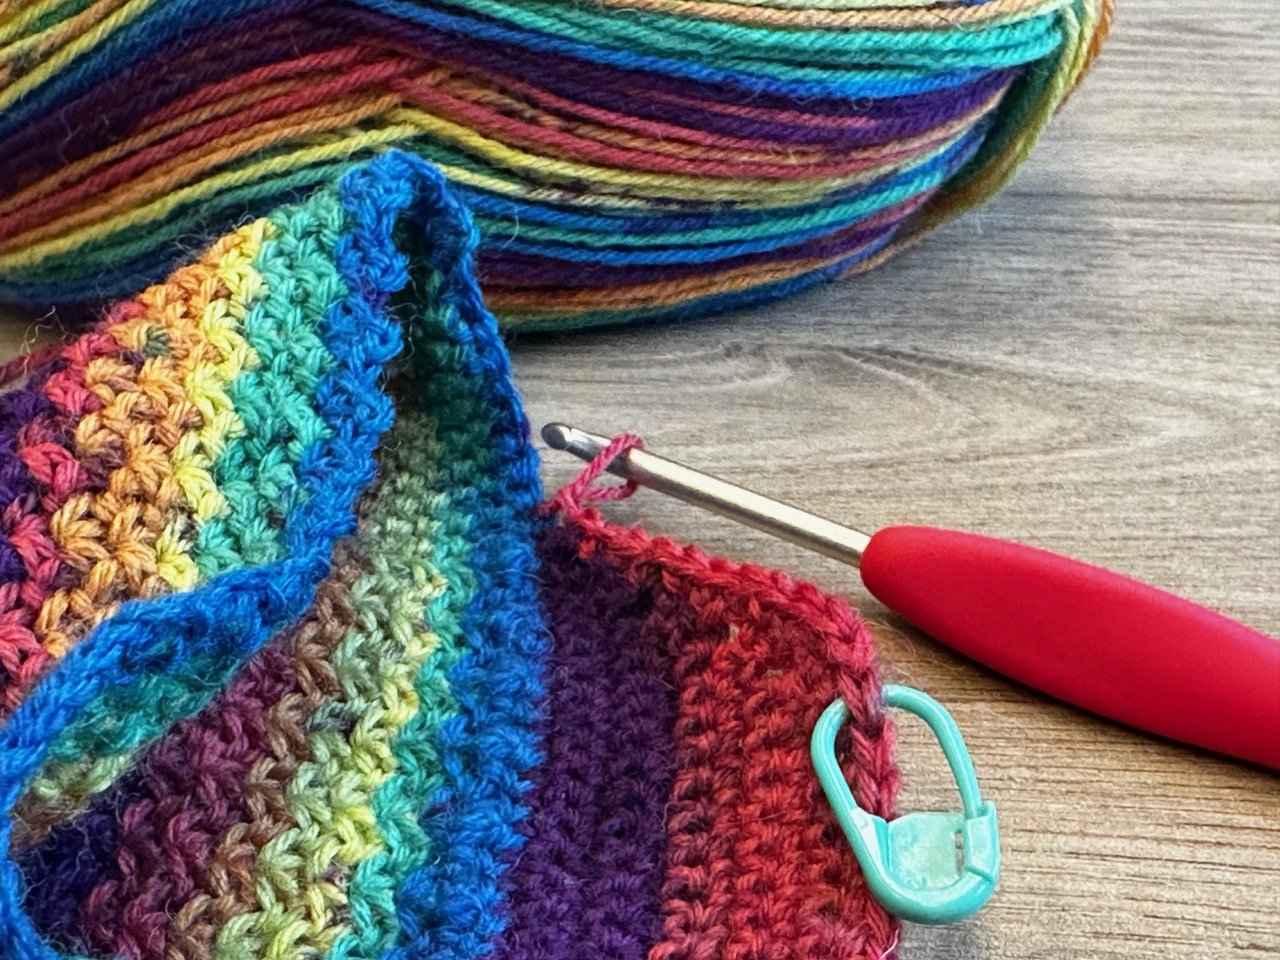 Crochet journal - Payhip